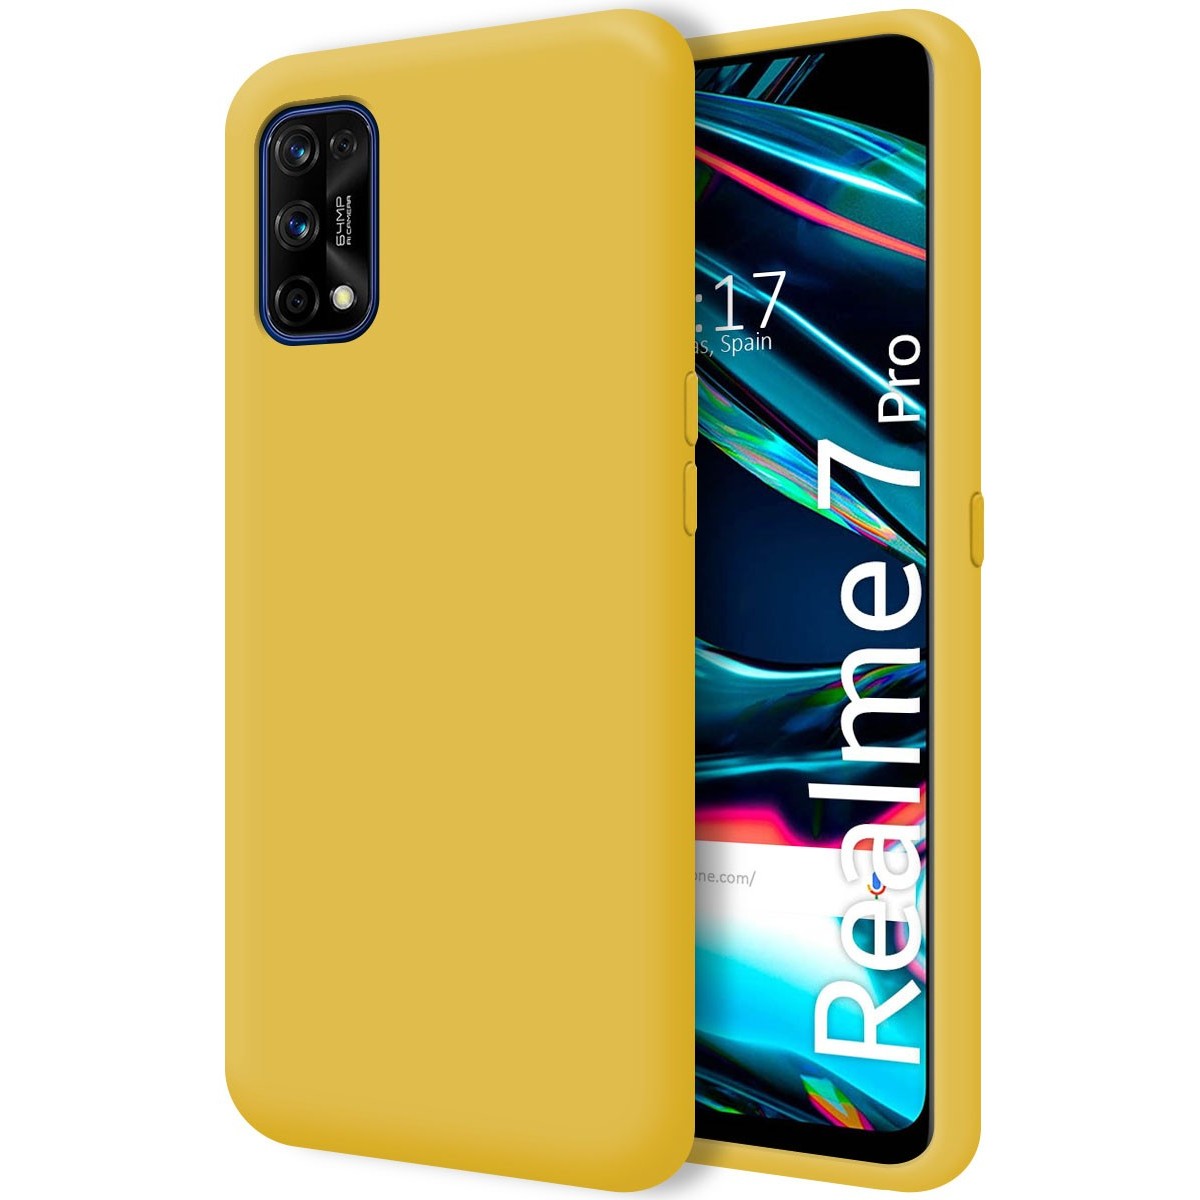 Funda Silicona Líquida Ultra Suave para Realme 7 Pro color Amarilla